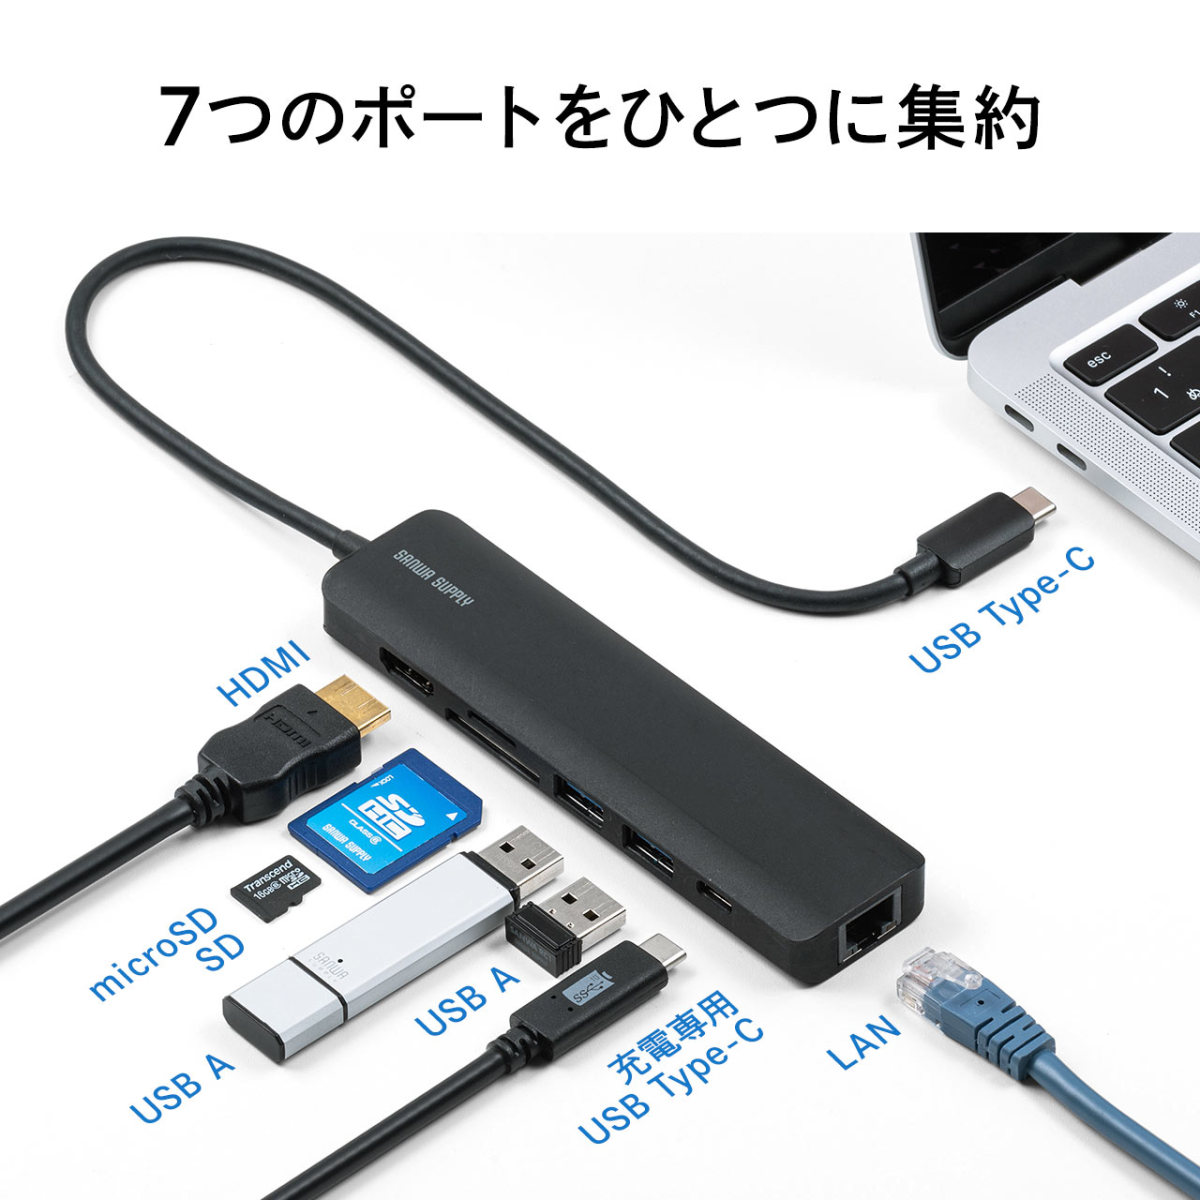 超歓迎された サンワサプライ USB Type Cコンボハブ カードリーダー付き ブラック USB-3TCHC16BK 